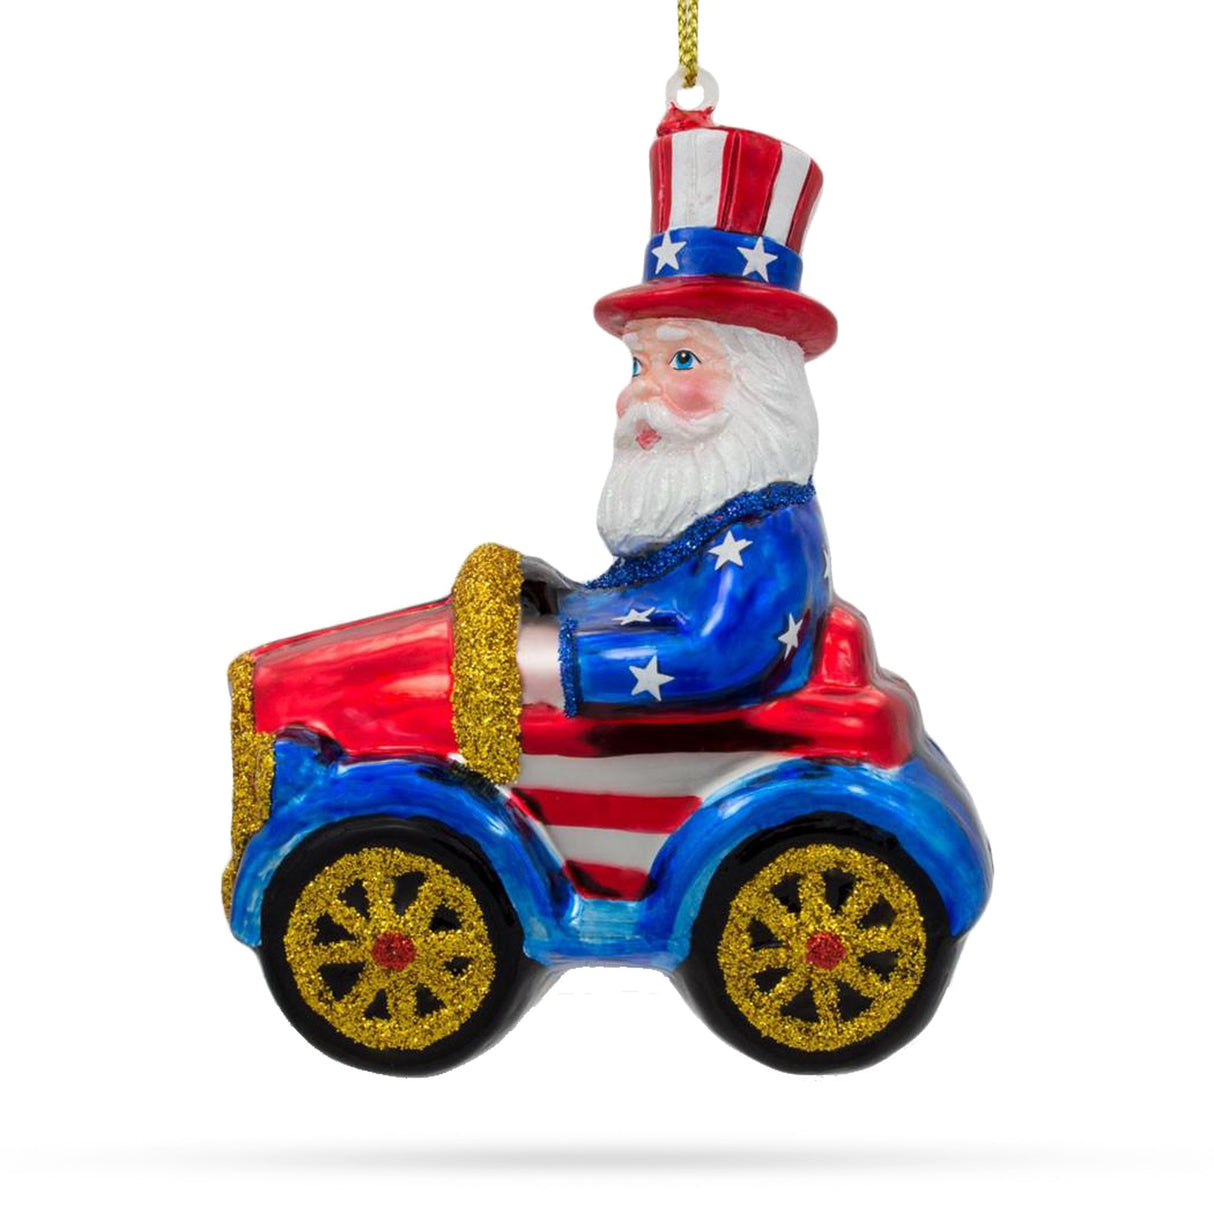 Buy Christmas Ornaments Patriotic Santa by BestPysanky Online Gift Ship